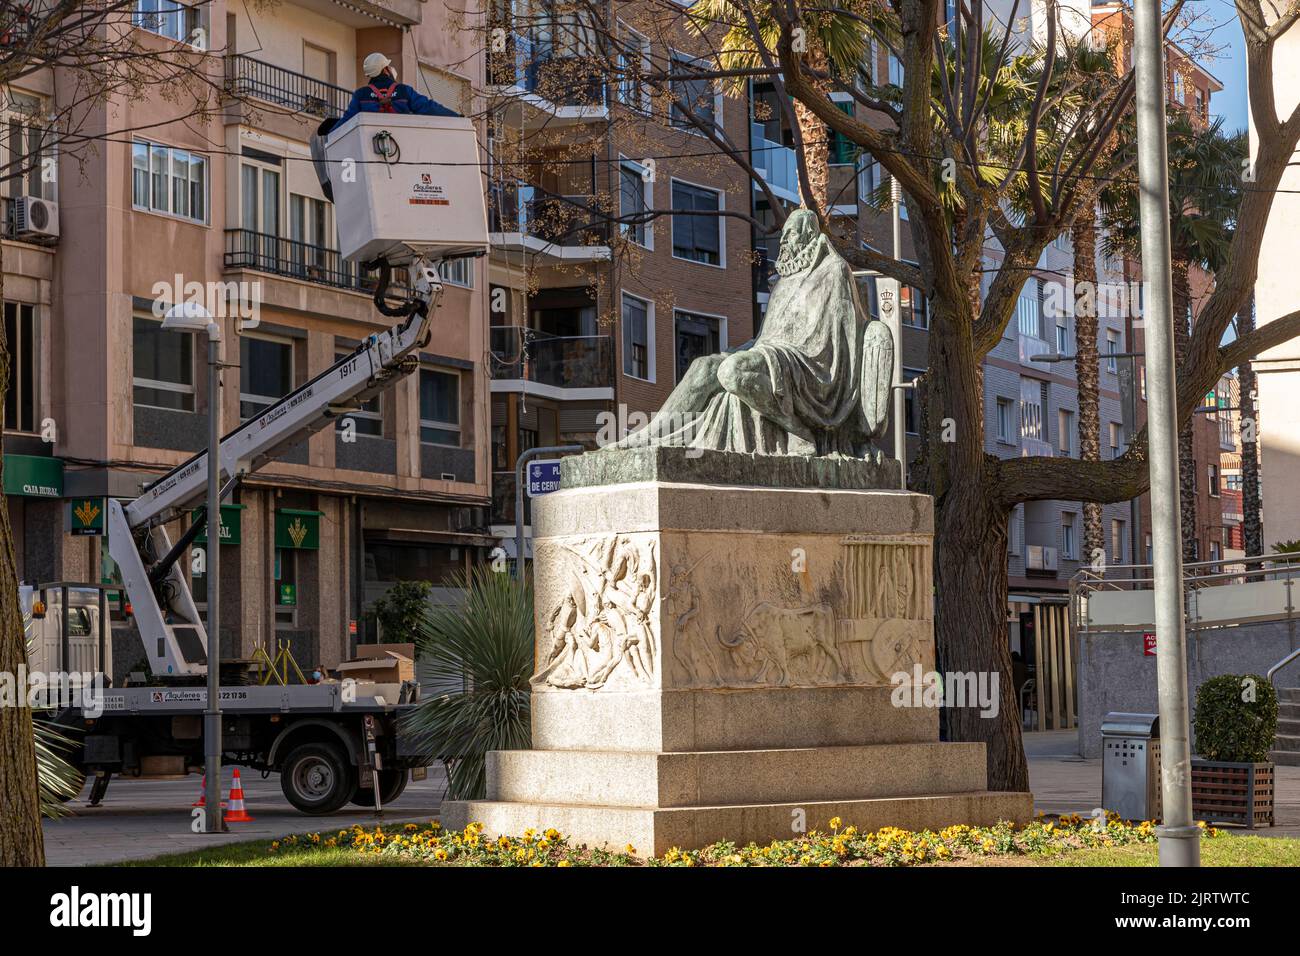 Ciudad Real, España. Monumento a Miguel de Cervantes Saavedra, un escritor español de principios modernos más conocido por la novela Don Quijote o Quijote de la Mancha Foto de stock